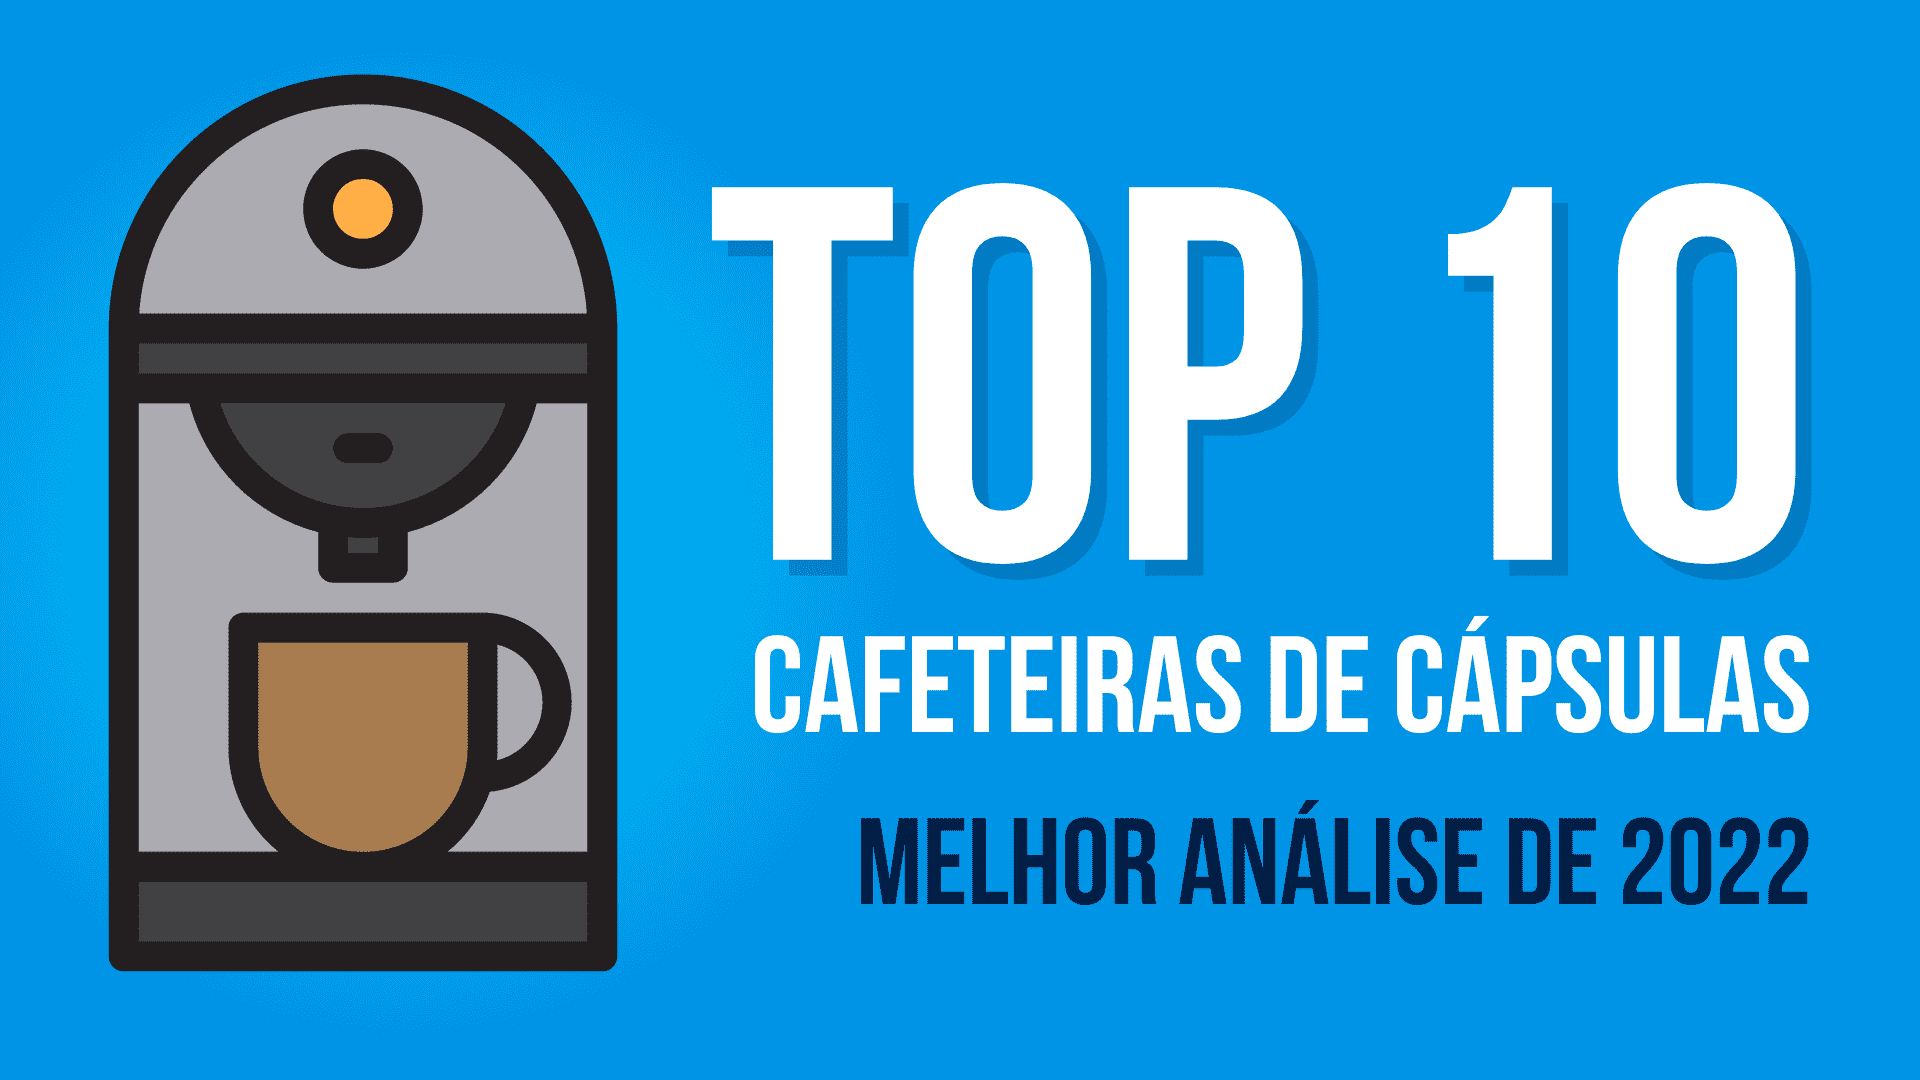 https://www.torrado.com.br/wp-content/uploads/2022/10/melhores-cafeteiras-capsulas.png